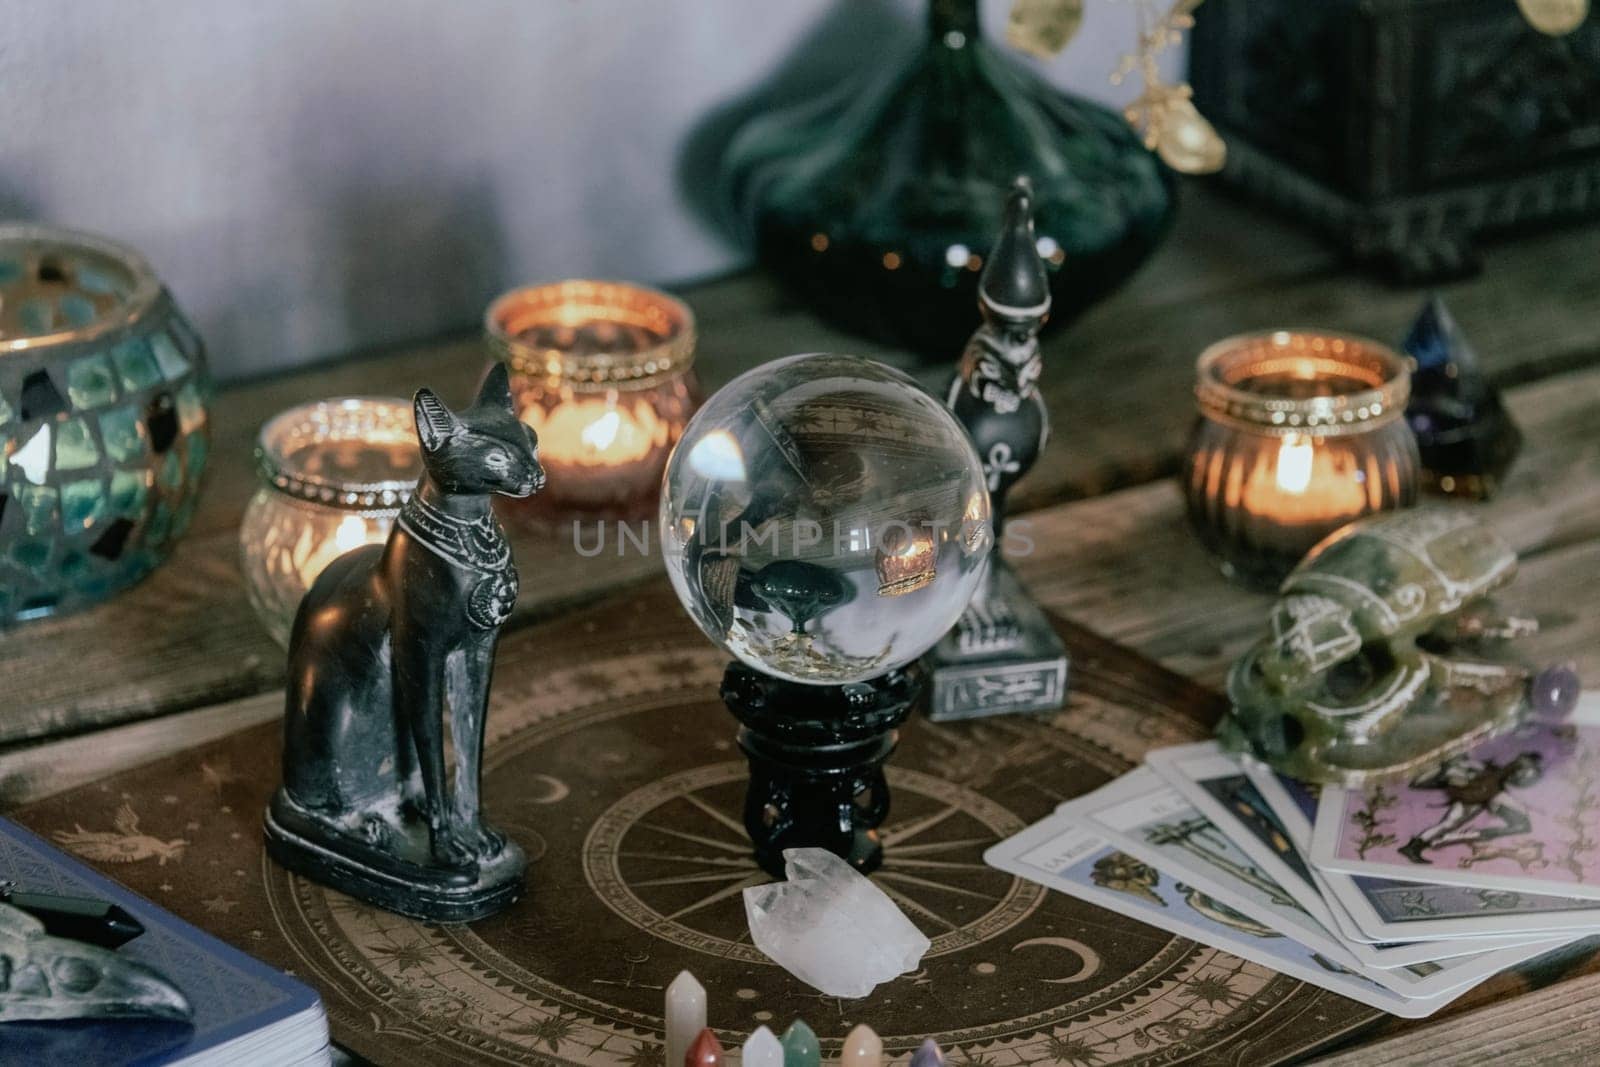 Esoteric Tarot and Crystal Ball Setup with Mystical Decor